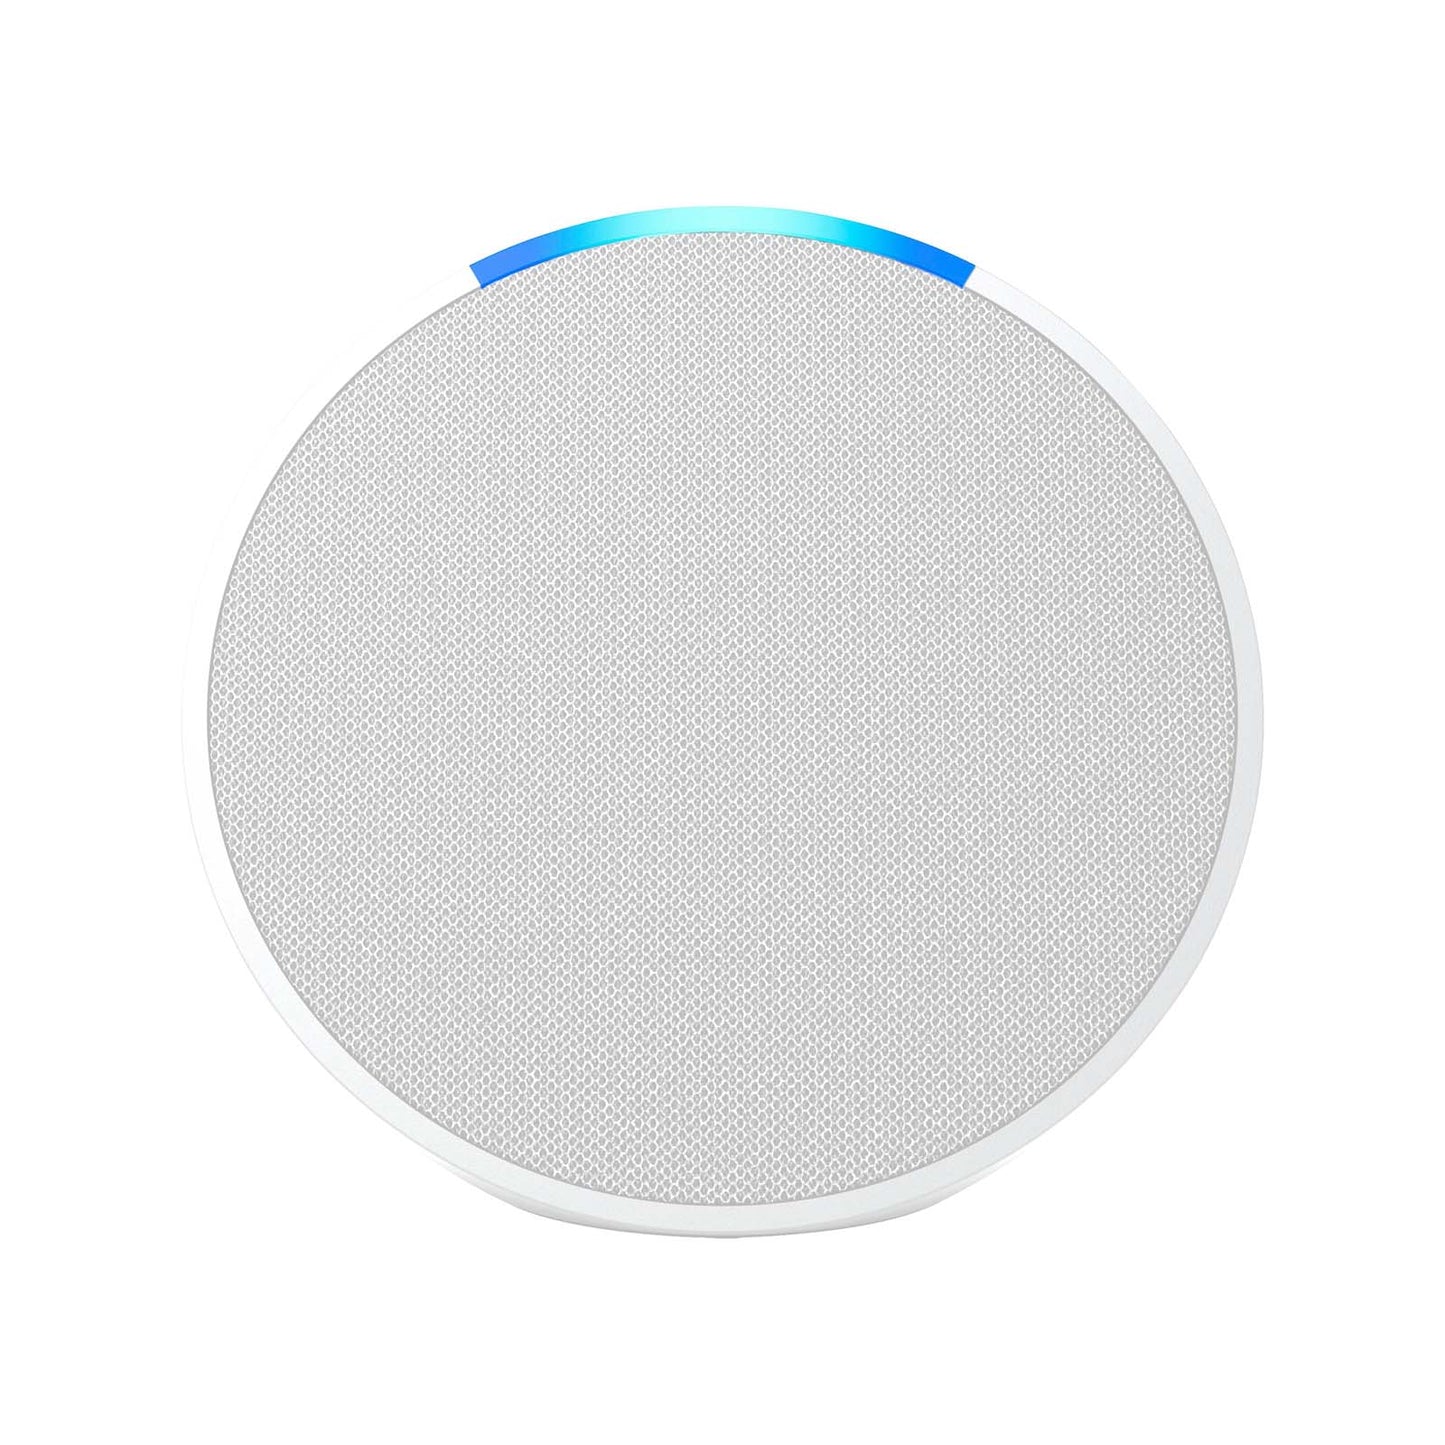 Bocina Inteligente Amazon Echo Pop Blanca con Alexa